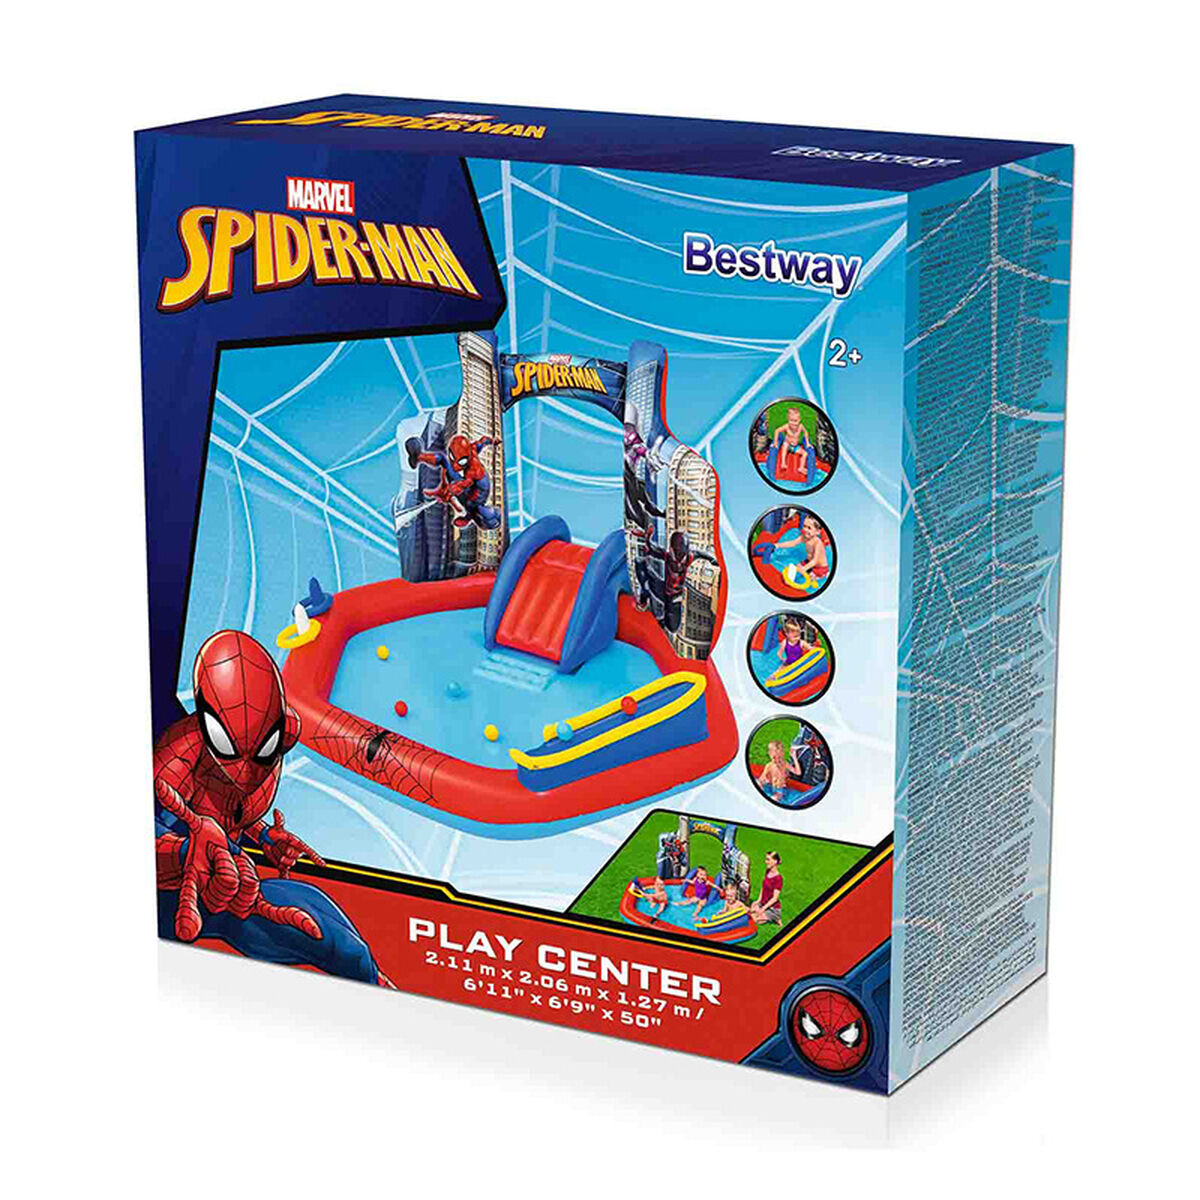 Детский бассейн Bestway Игровая площадка Spiderman 211 x 206 x 127 cm